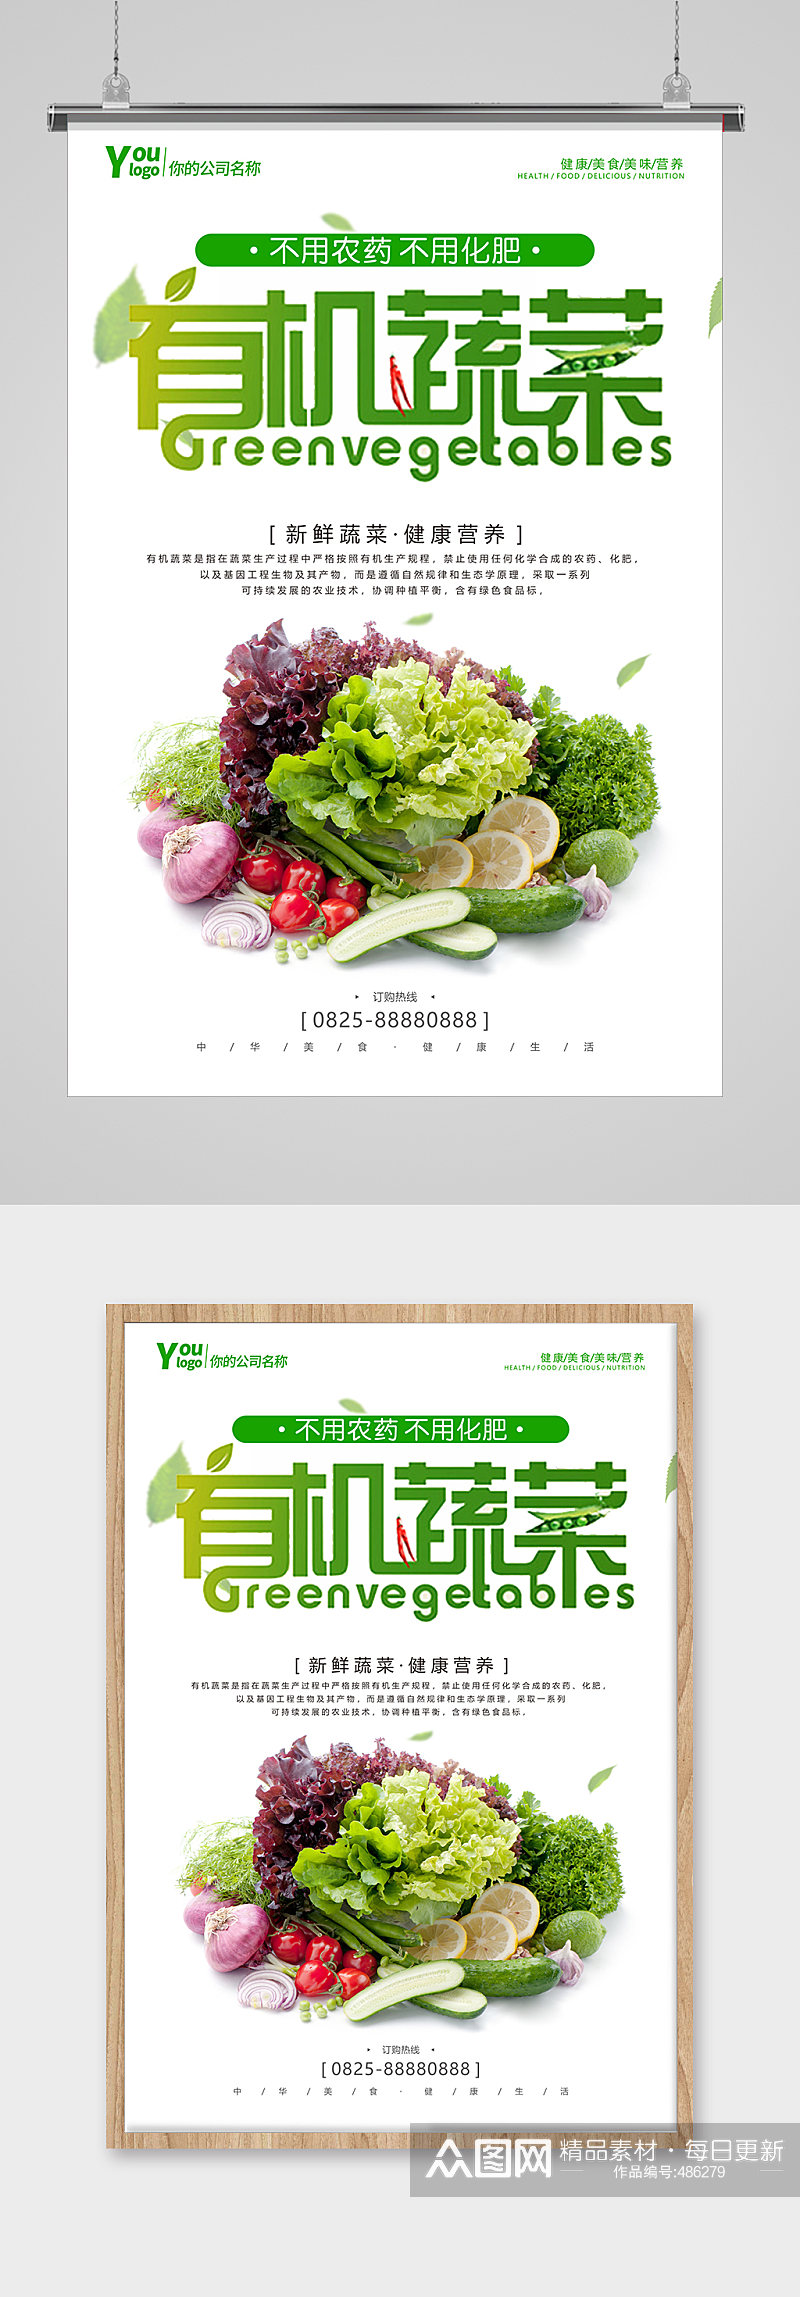 果蔬配送广告海报蔬菜海报素材